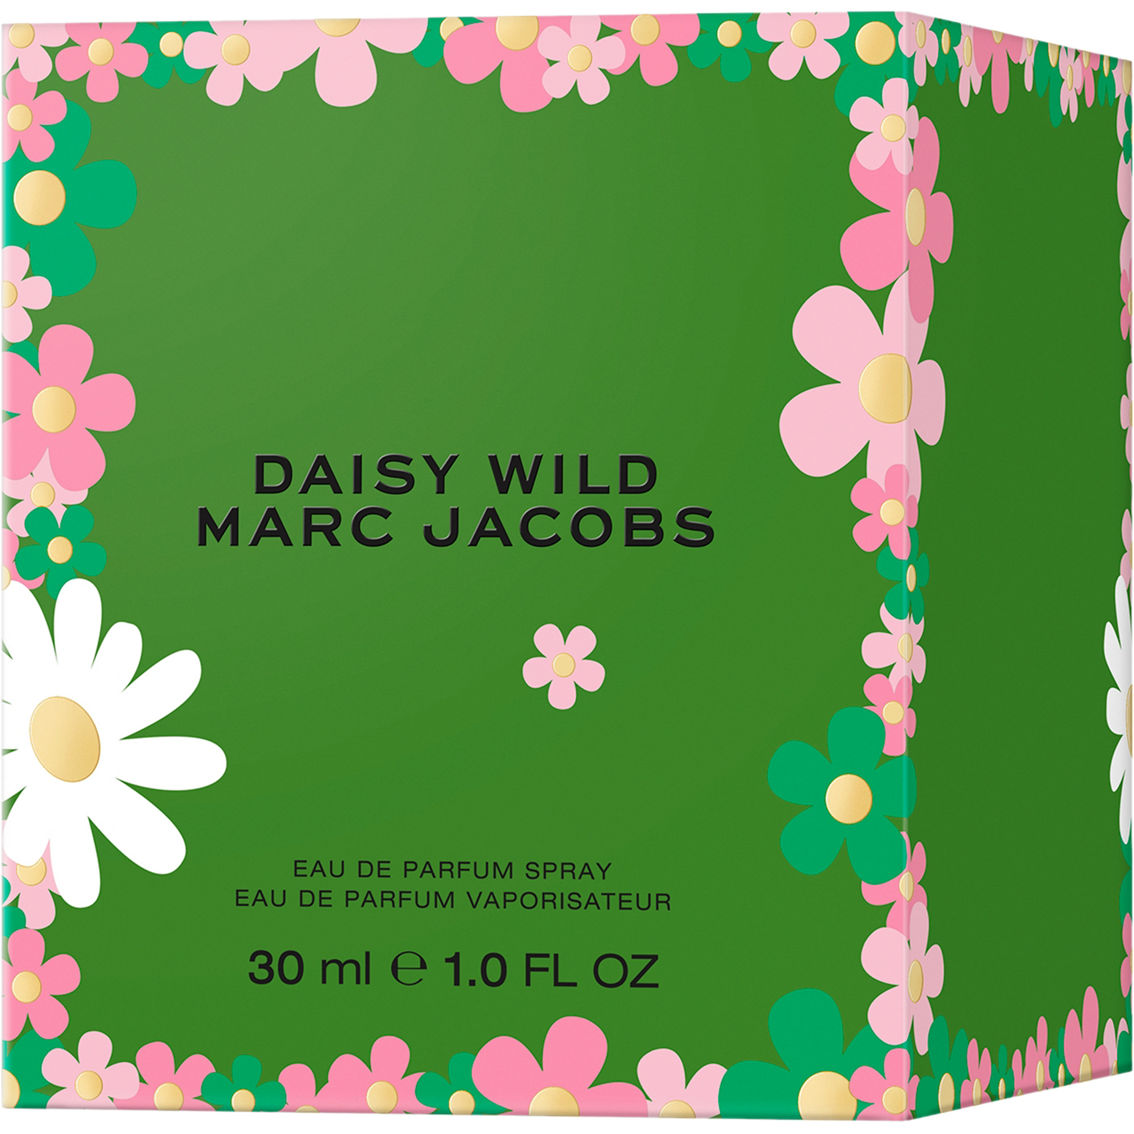 Marc Jacobs Daisy Wild Eau de Parfum - Image 3 of 3